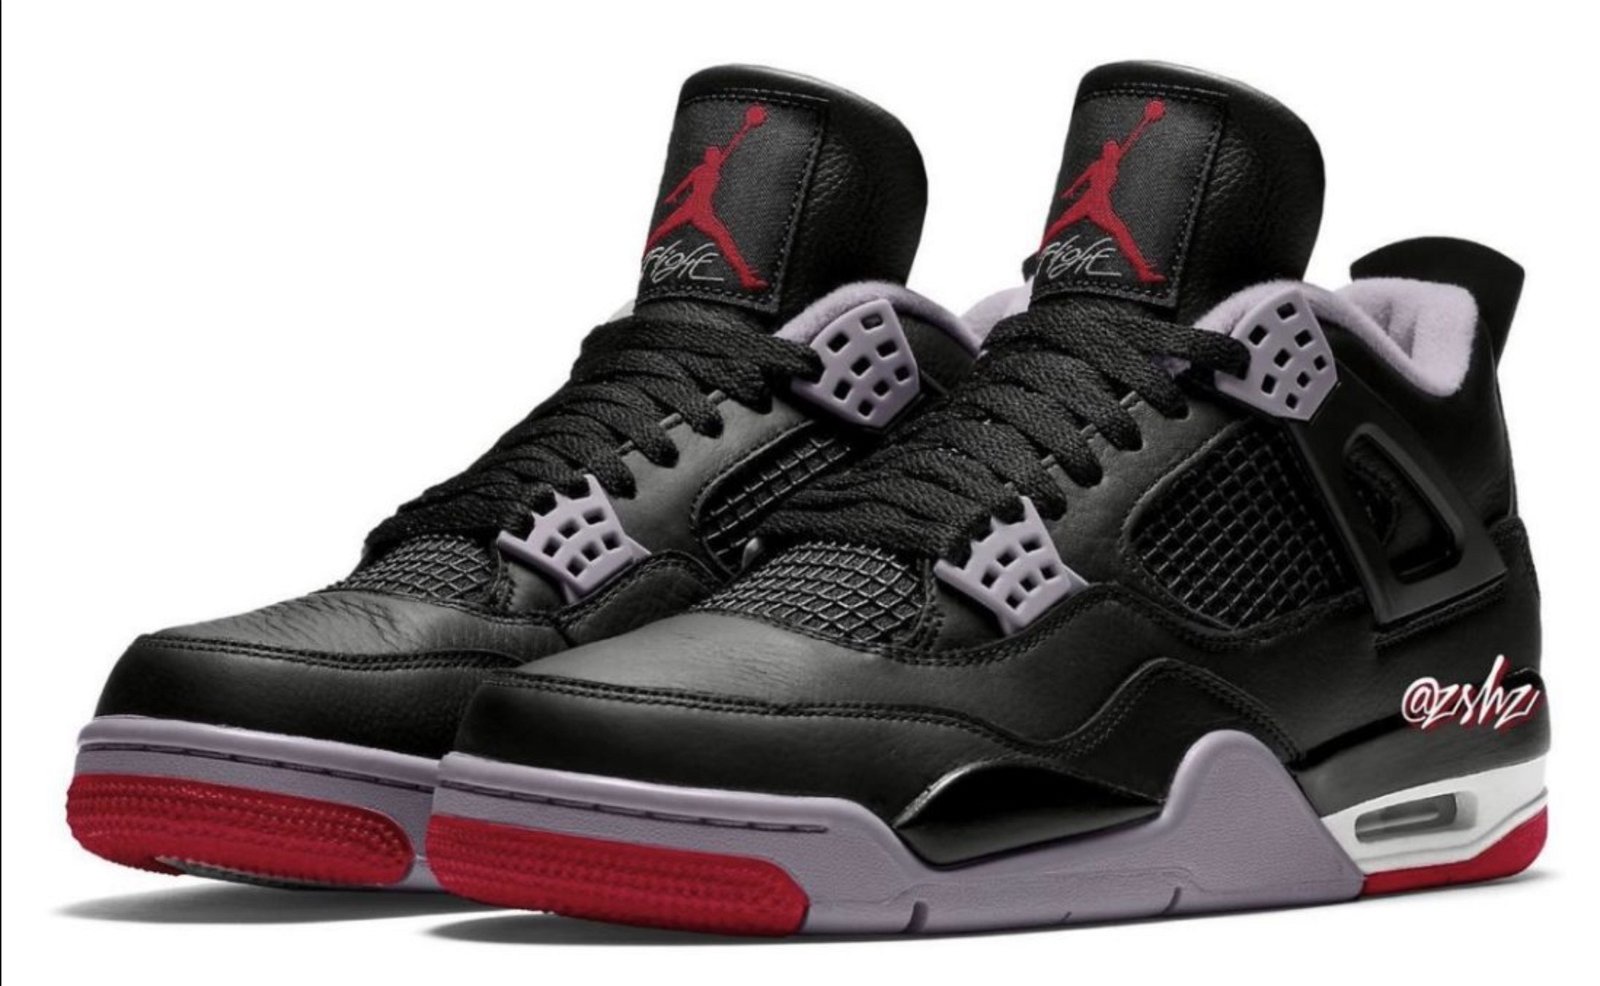 Air Jordan 4 Retro Bred Reimagined sneakers